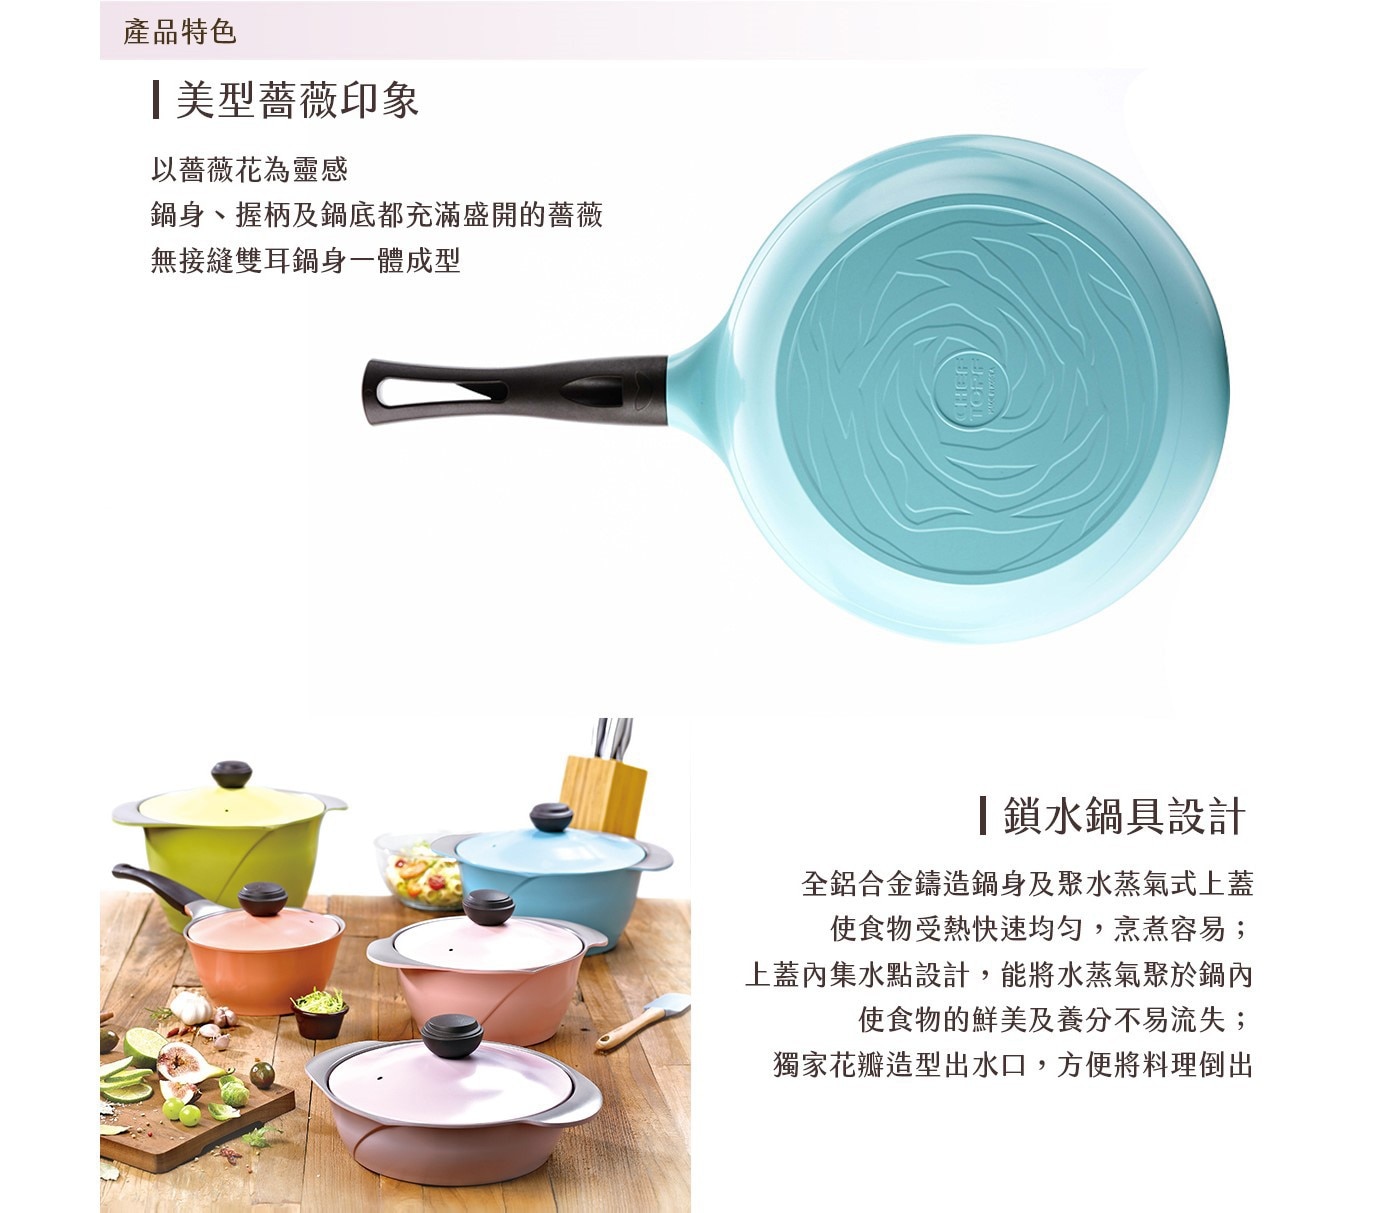 韓國Chef Topf 薔薇玫瑰系列26公分不沾炒鍋，頂級陶瓷塗層、絕佳不沾效果，不含PFOA、PFOS，內徑26cm，適合中小家庭使用。